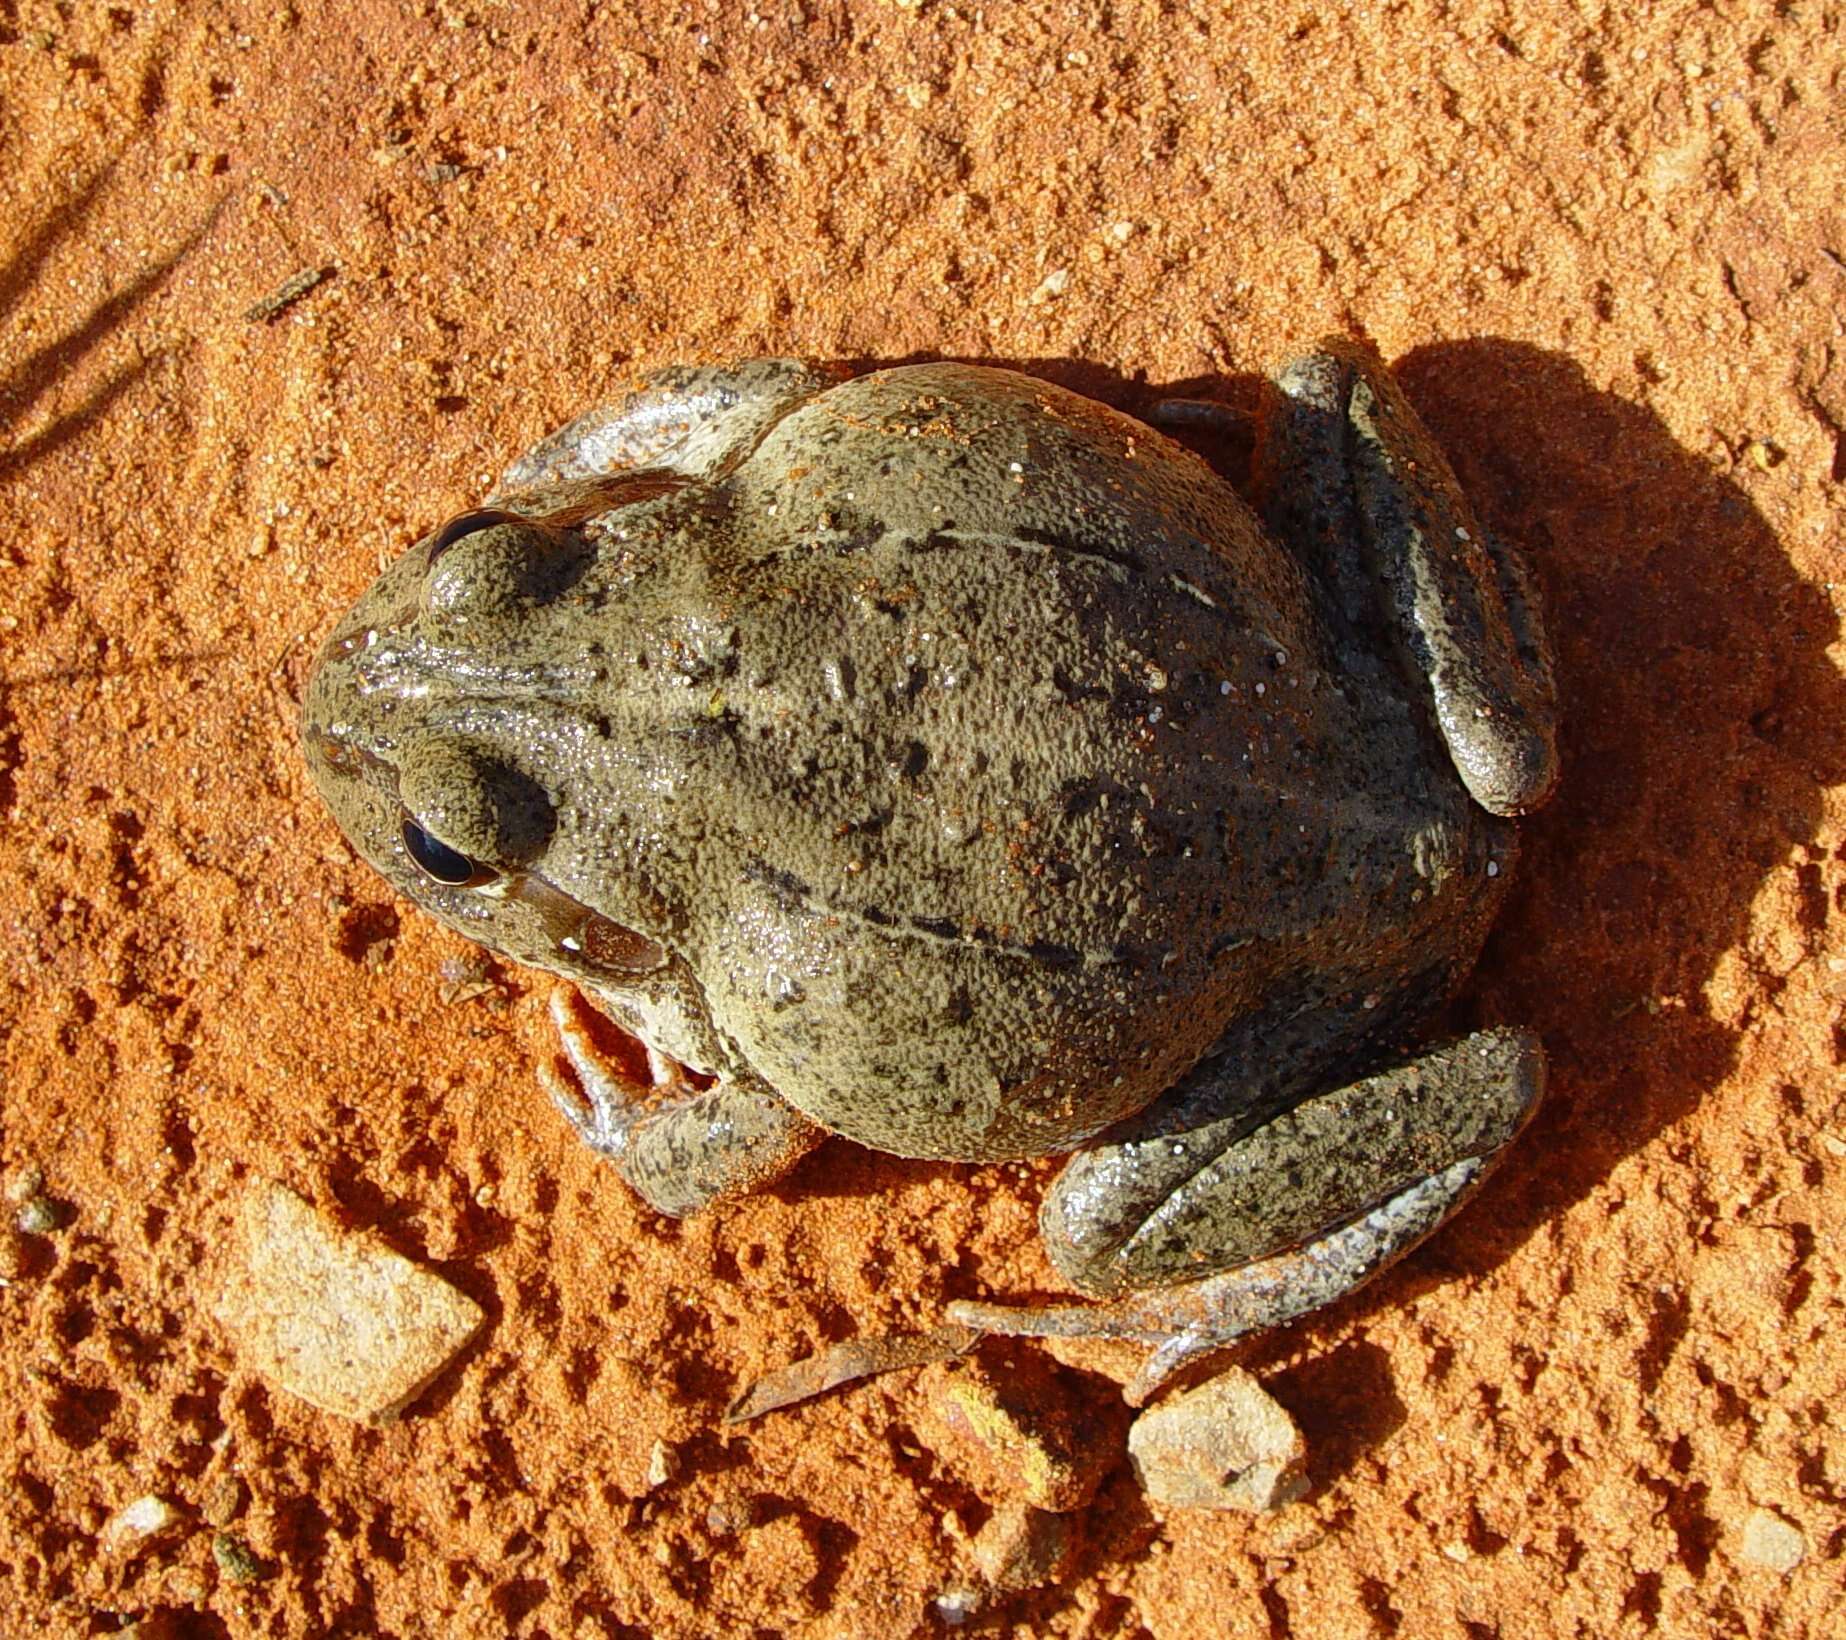 Image of Giant Frog